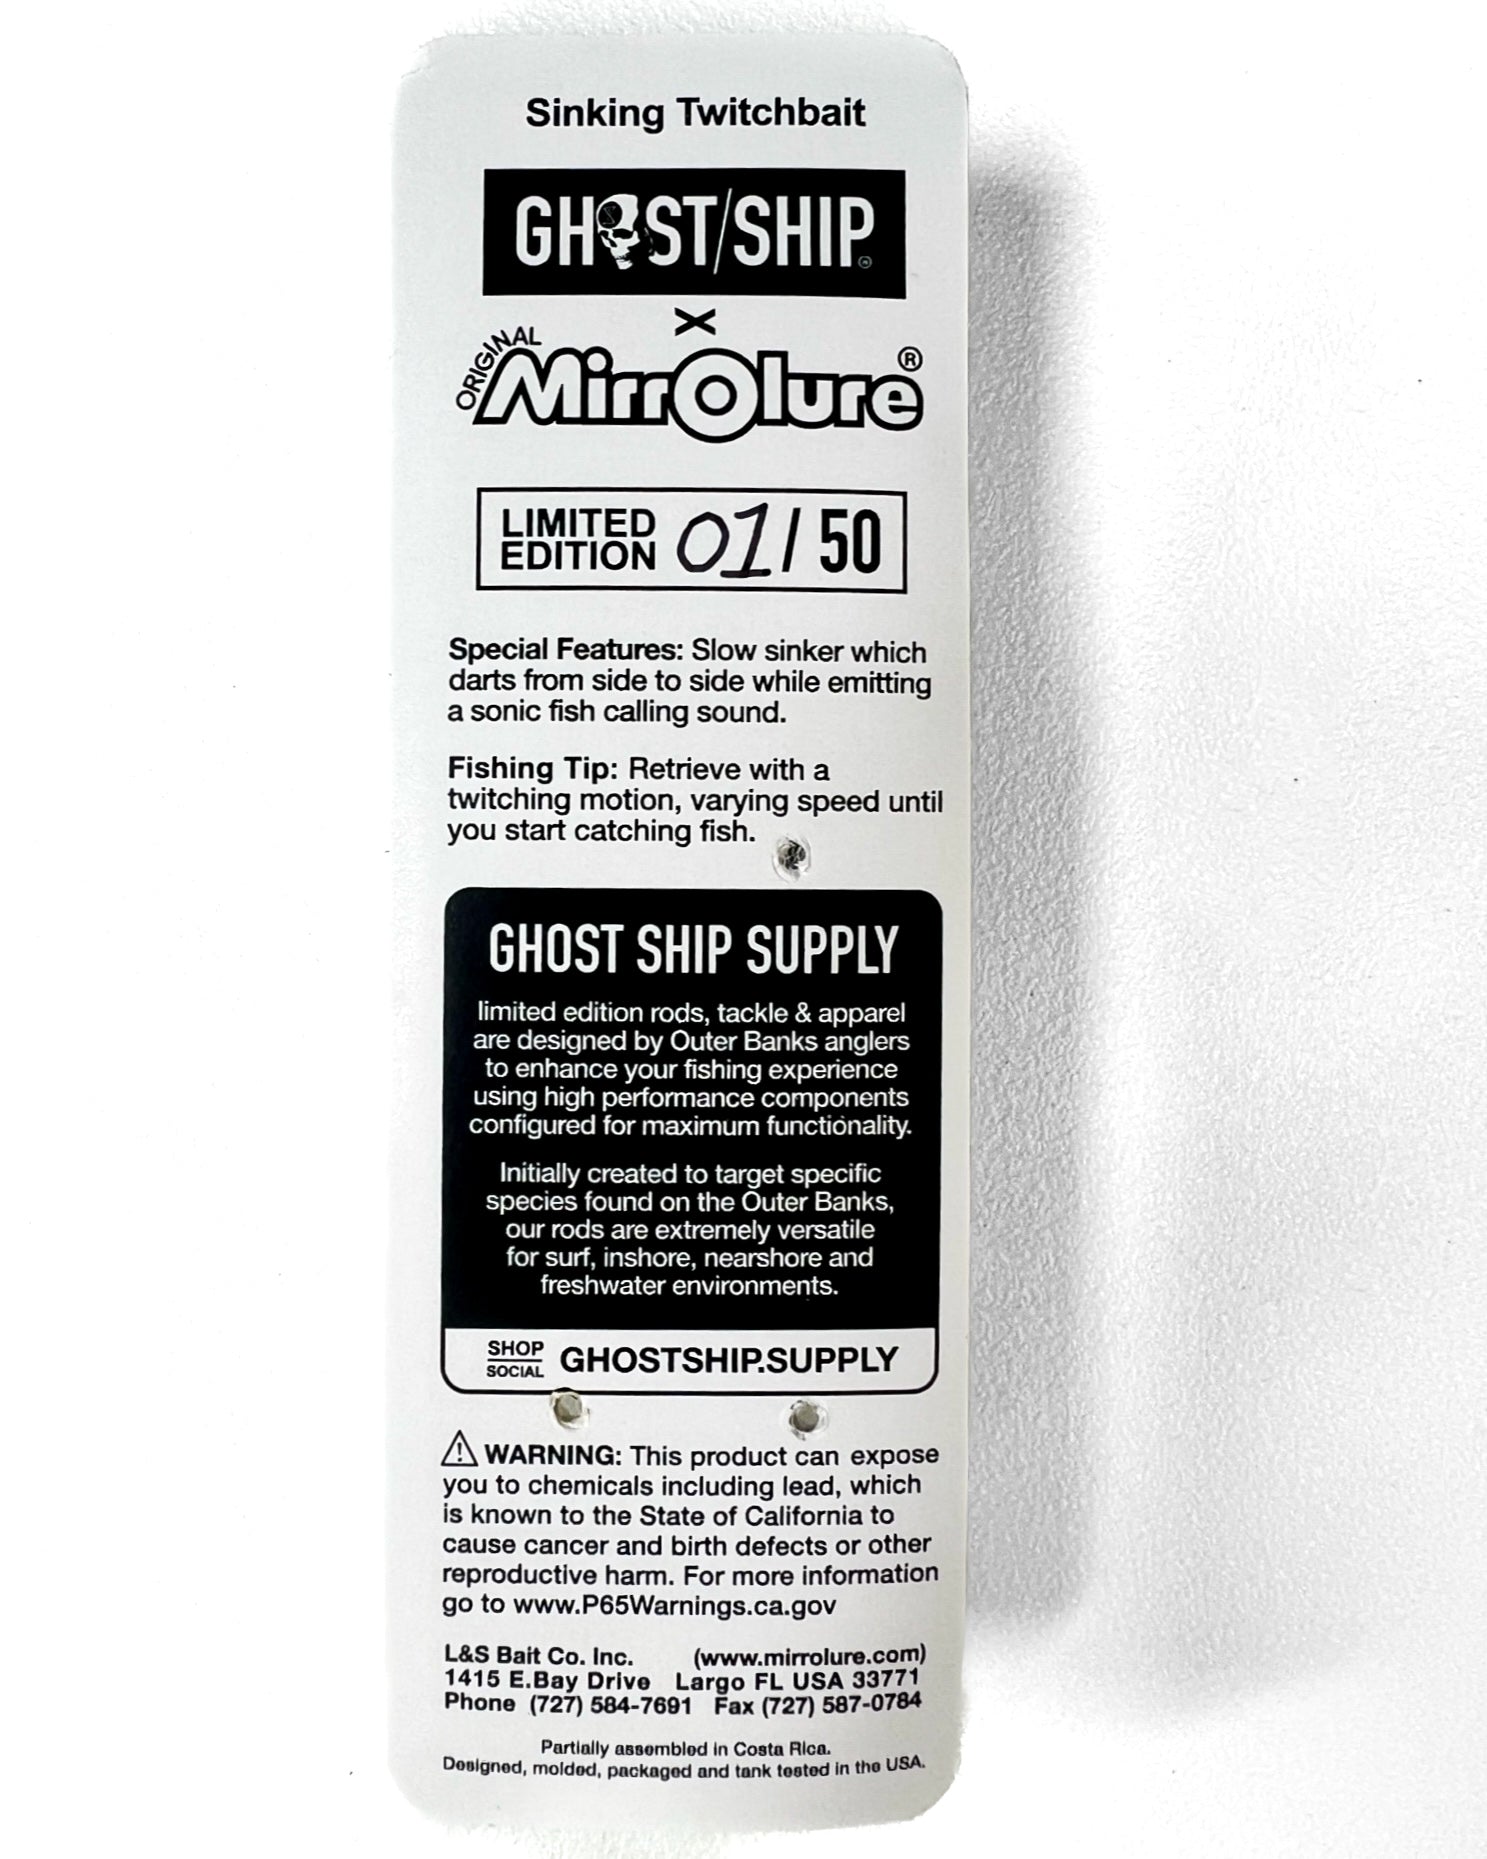 GHOST/SHIP X MIRROLURE Sinking Twitchbait - Green Machine - GHOSTSHIP.Supply